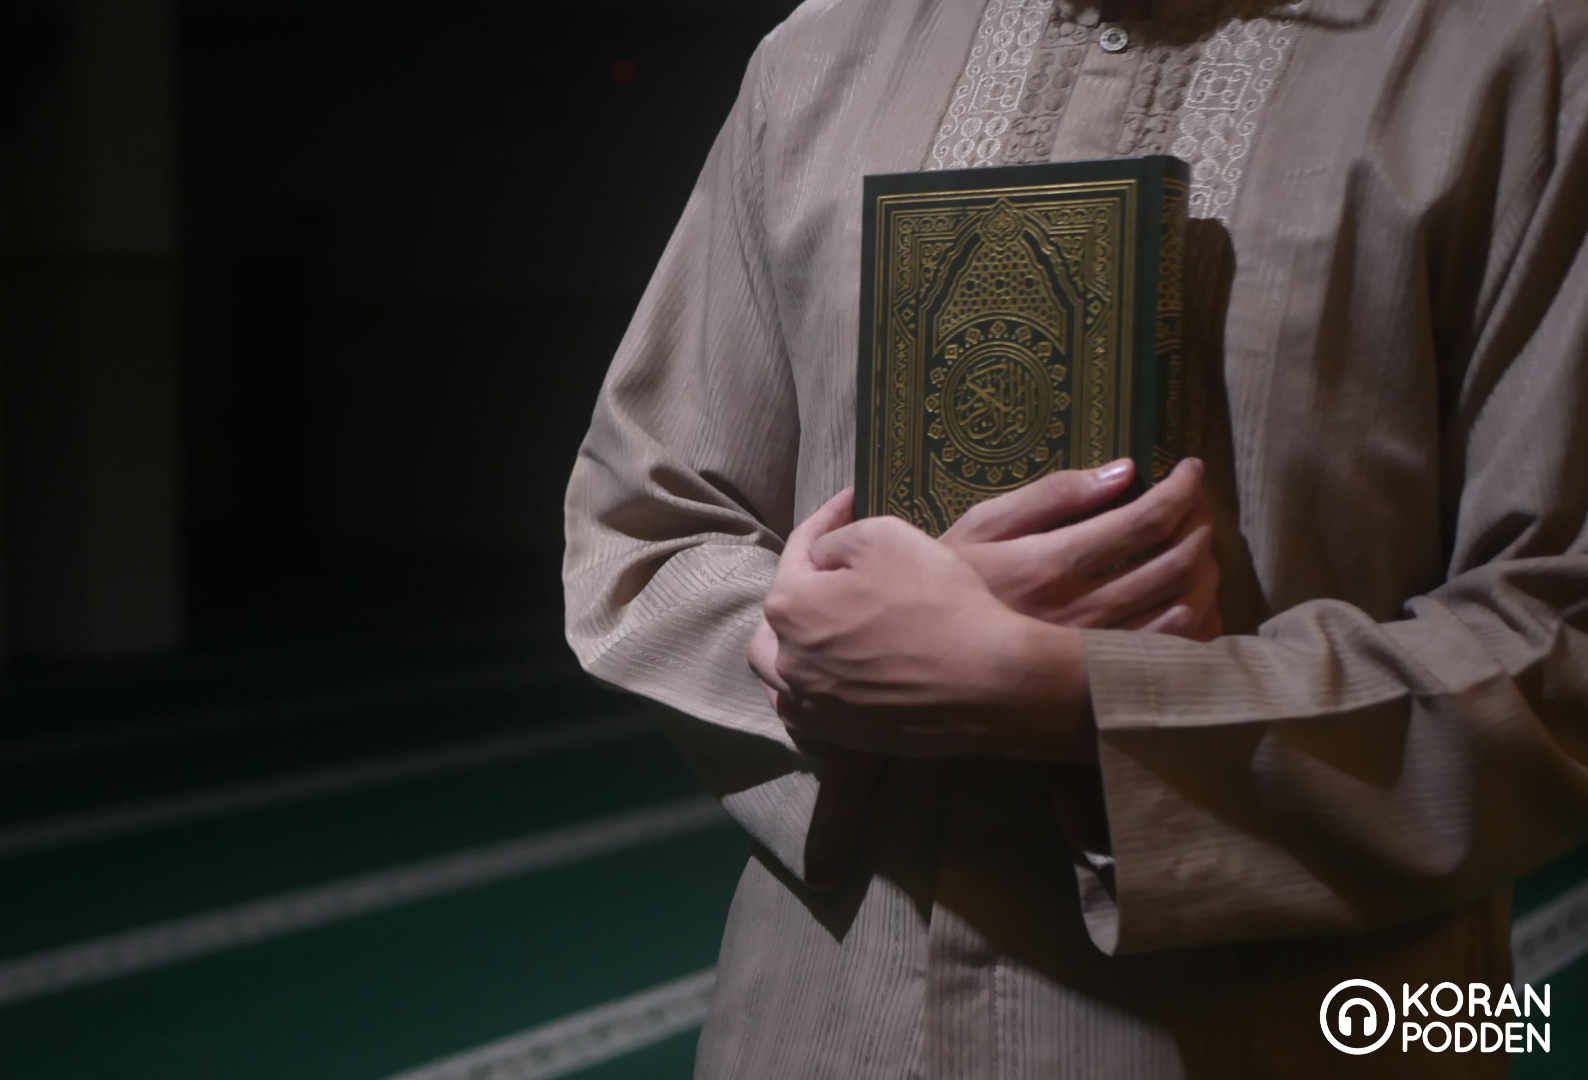 Koranen och lycka